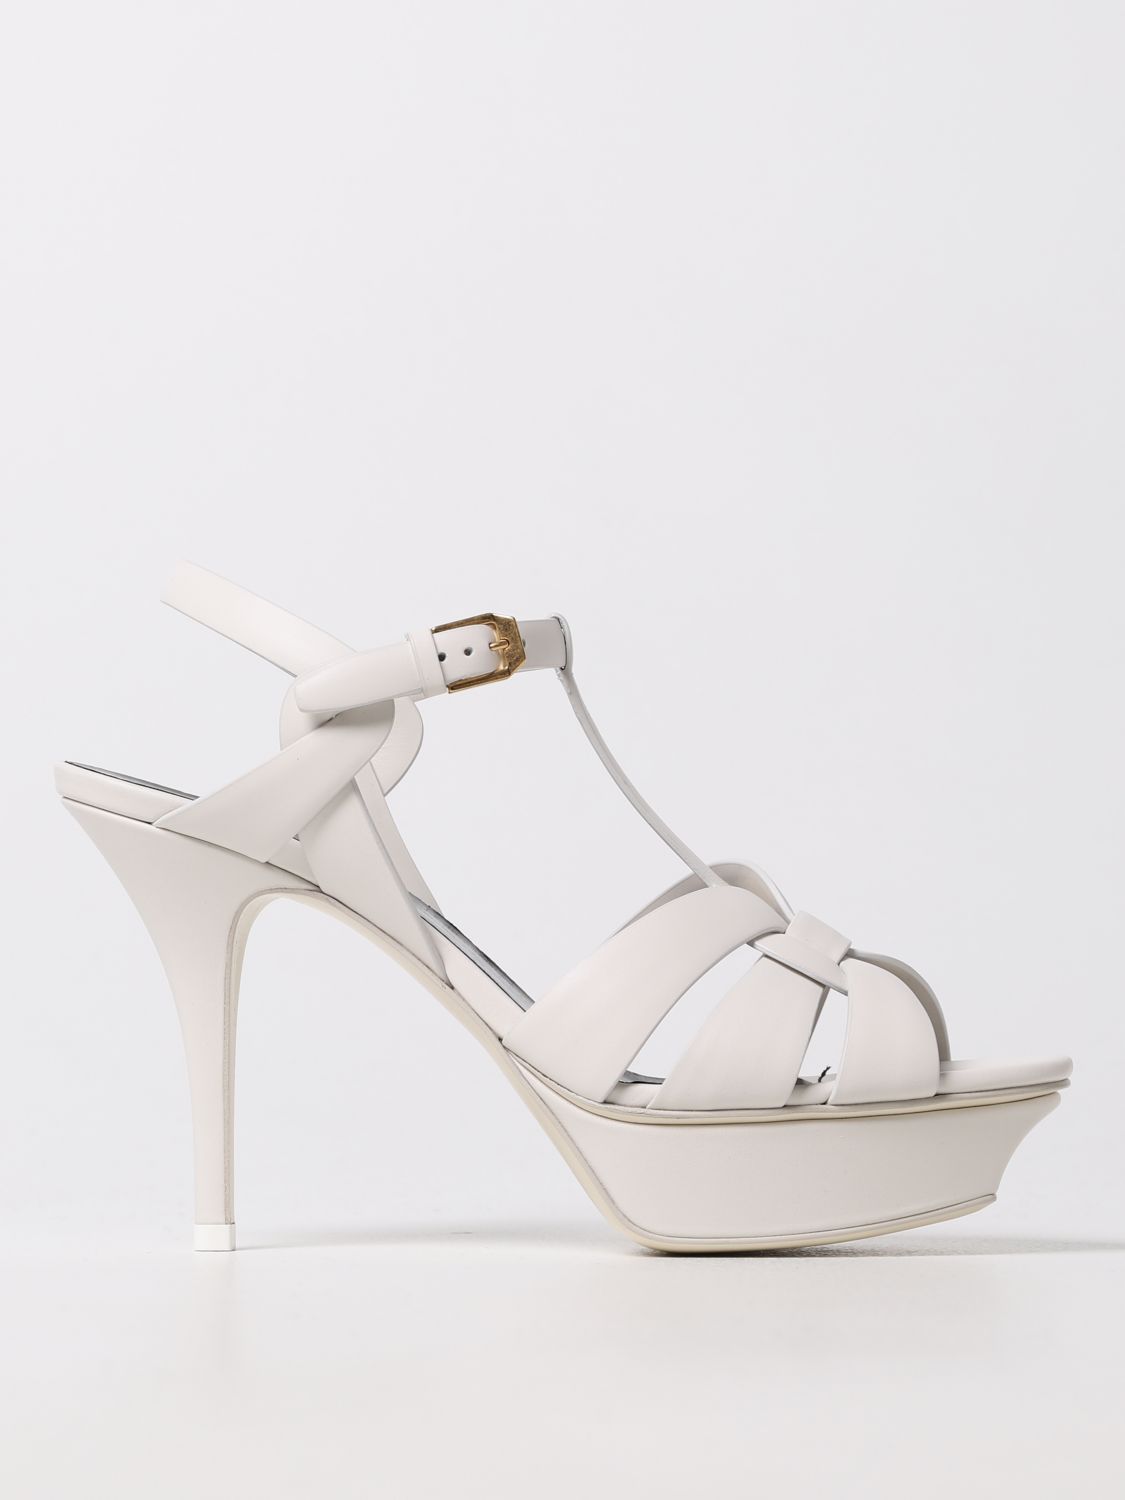 SAINT LAURENT: Tribute leather heeled sandals - White | Saint Laurent